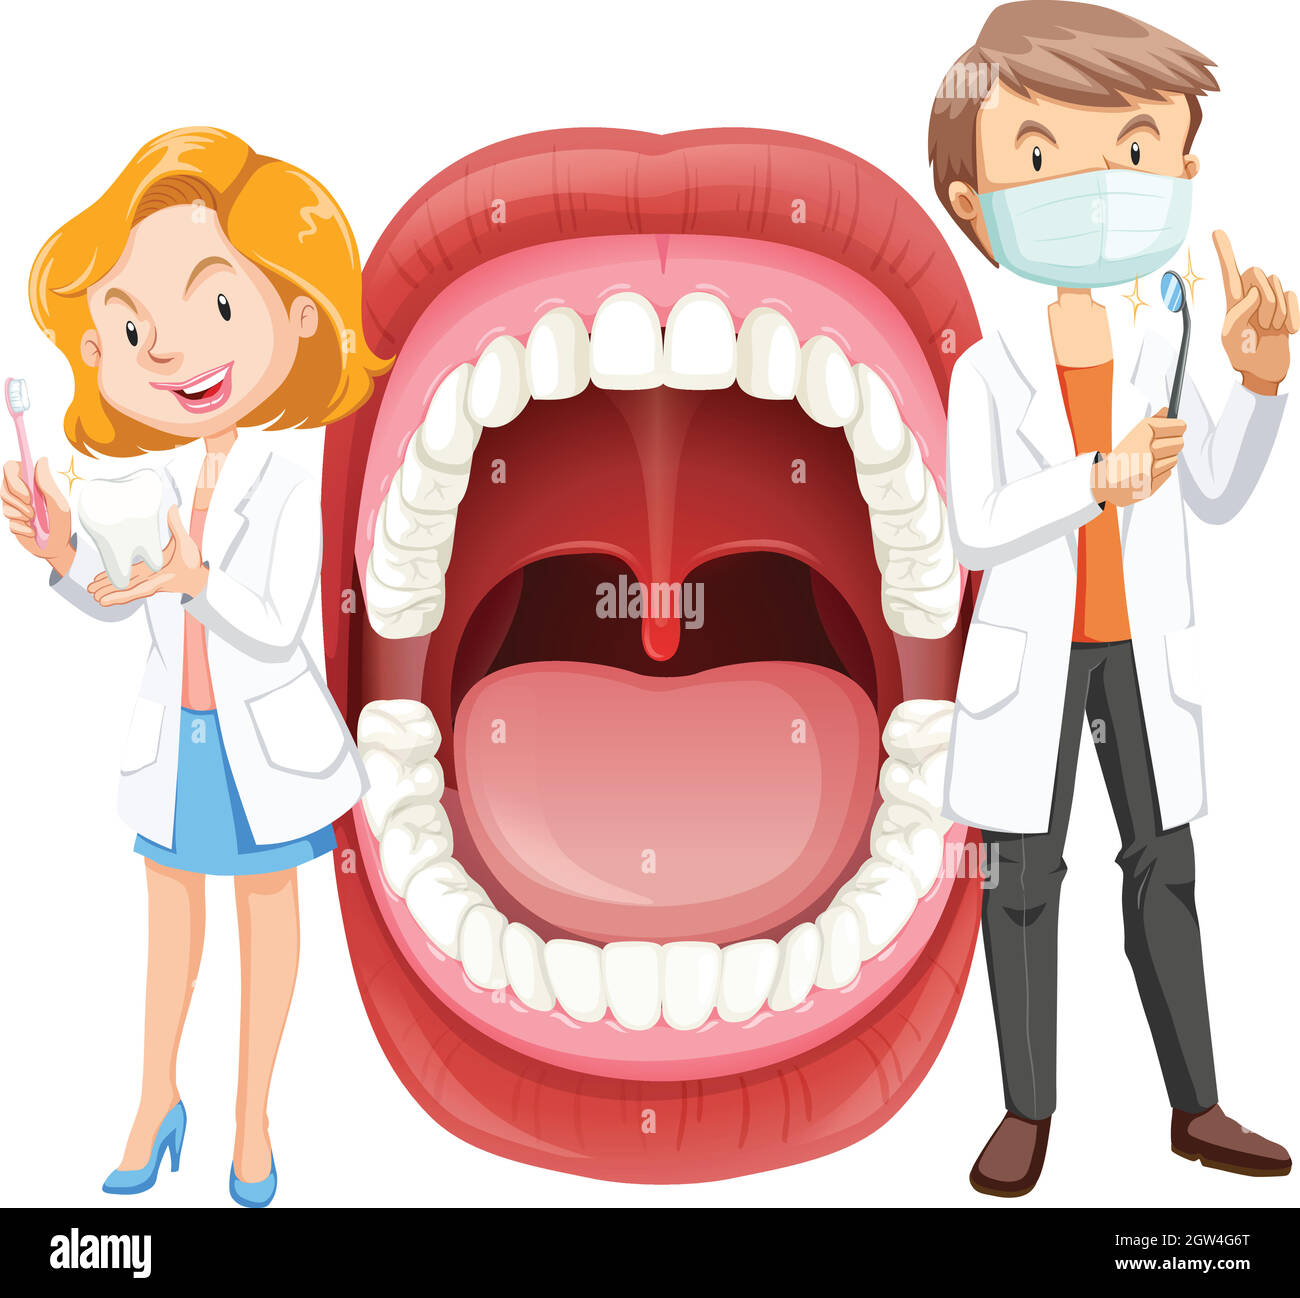 Anatomia della bocca umana con dentista Illustrazione Vettoriale